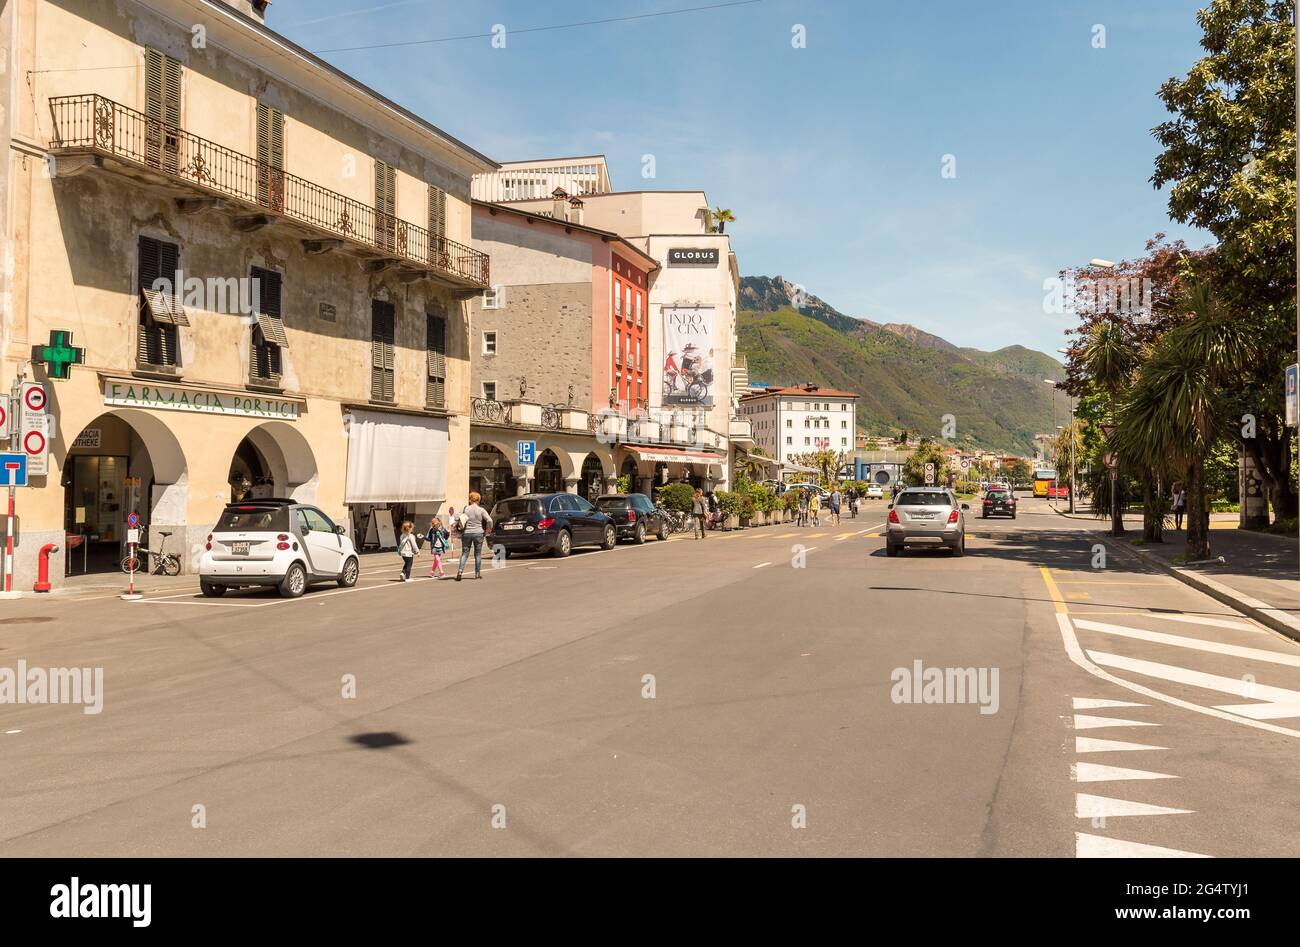 Locarno, Ticino, Switzerland - May 4, 2016: Main street in the center of Locarno city. Cityscape landscape. Stock Photo